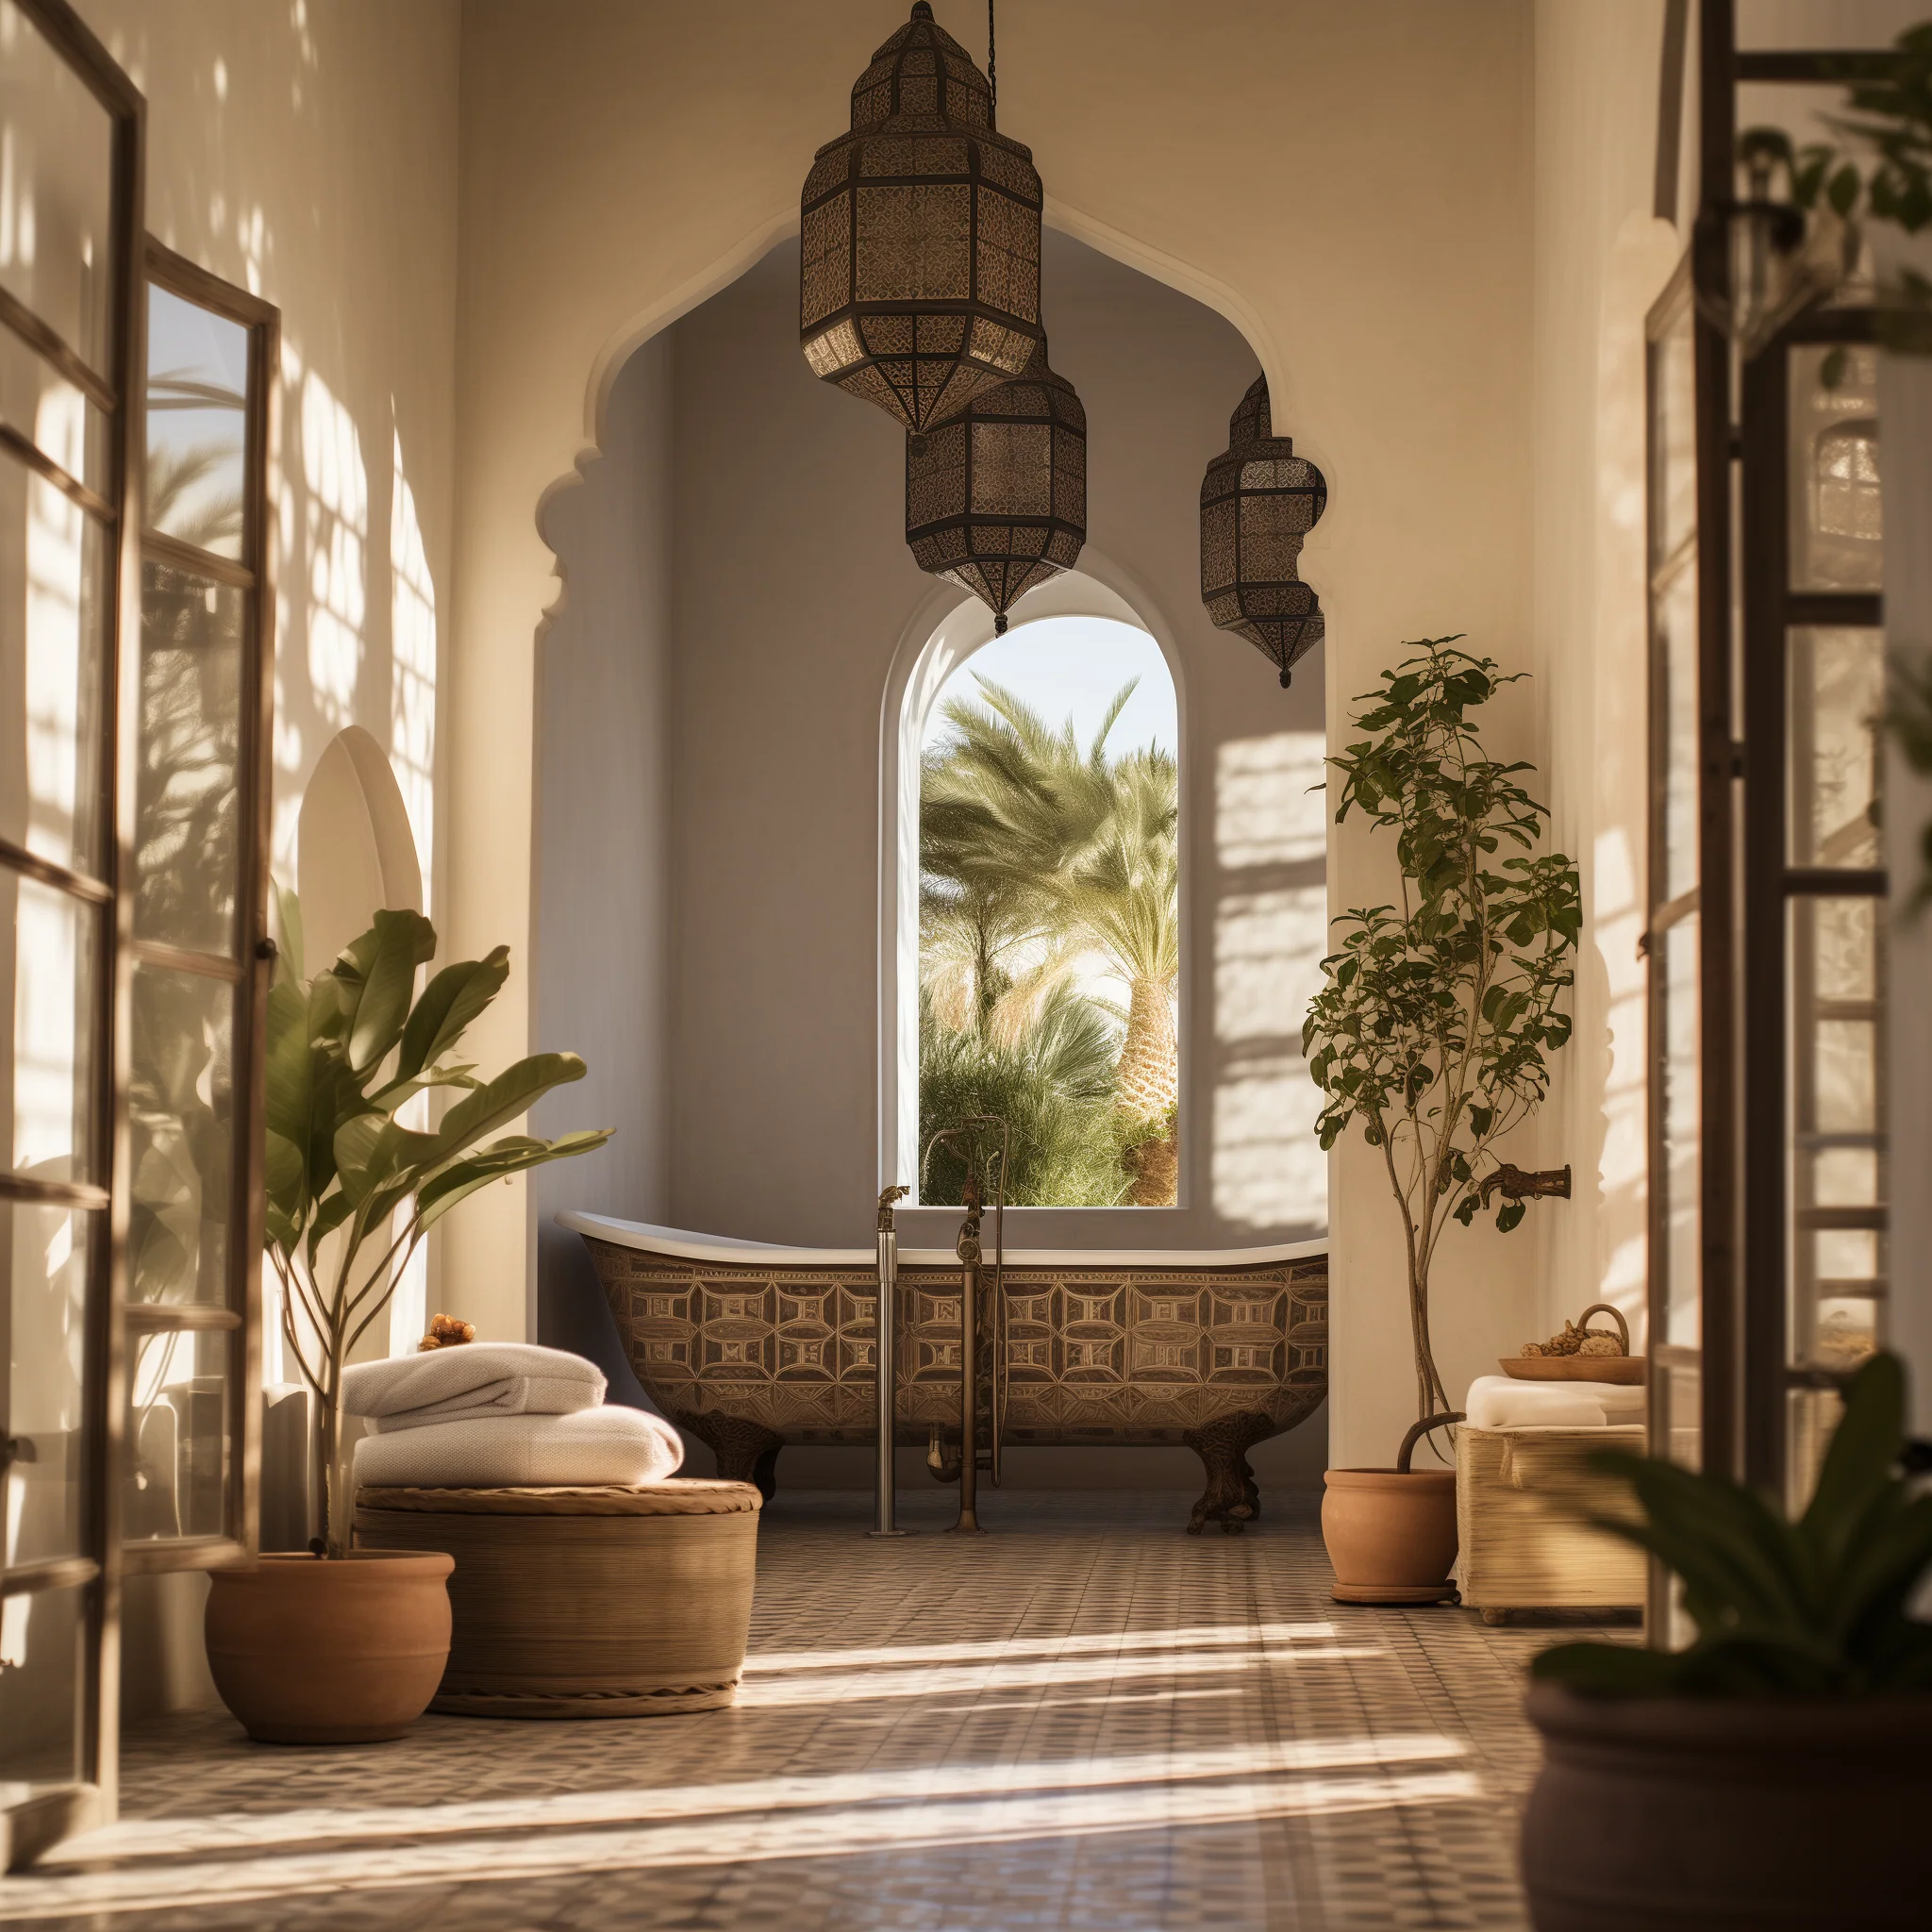 Moroccan Home Decor Ideas: Create a Cozy Bathroom